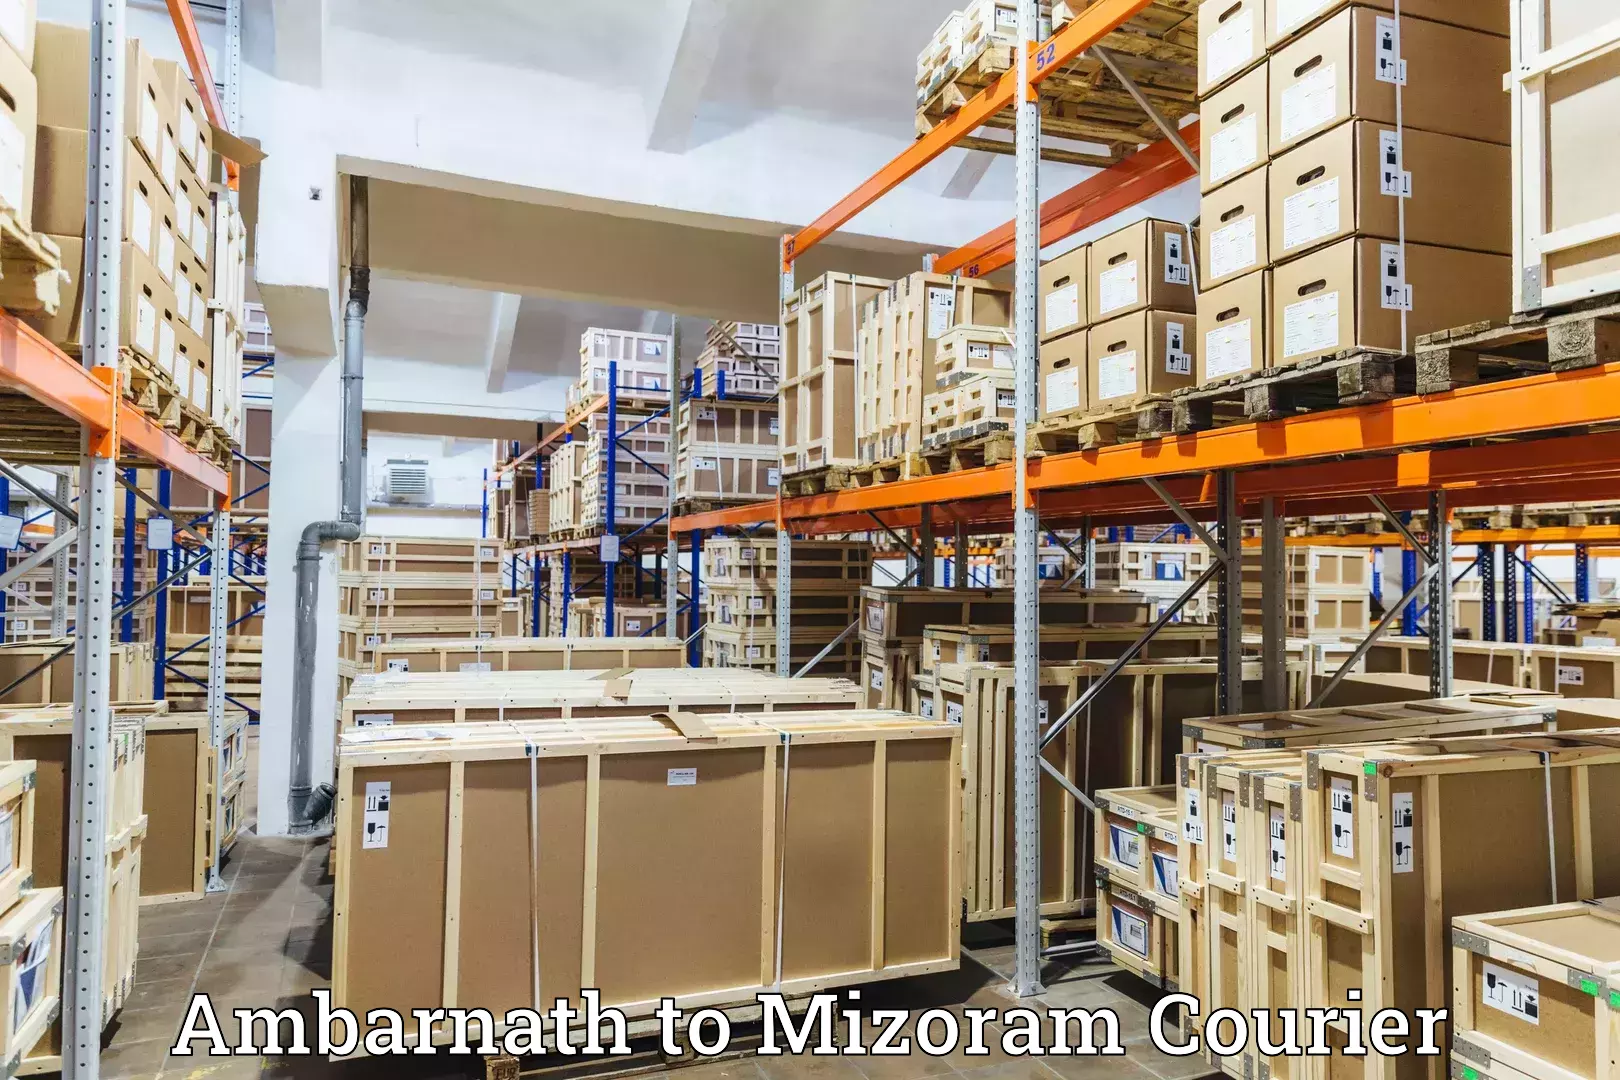 Courier service comparison Ambarnath to Mizoram